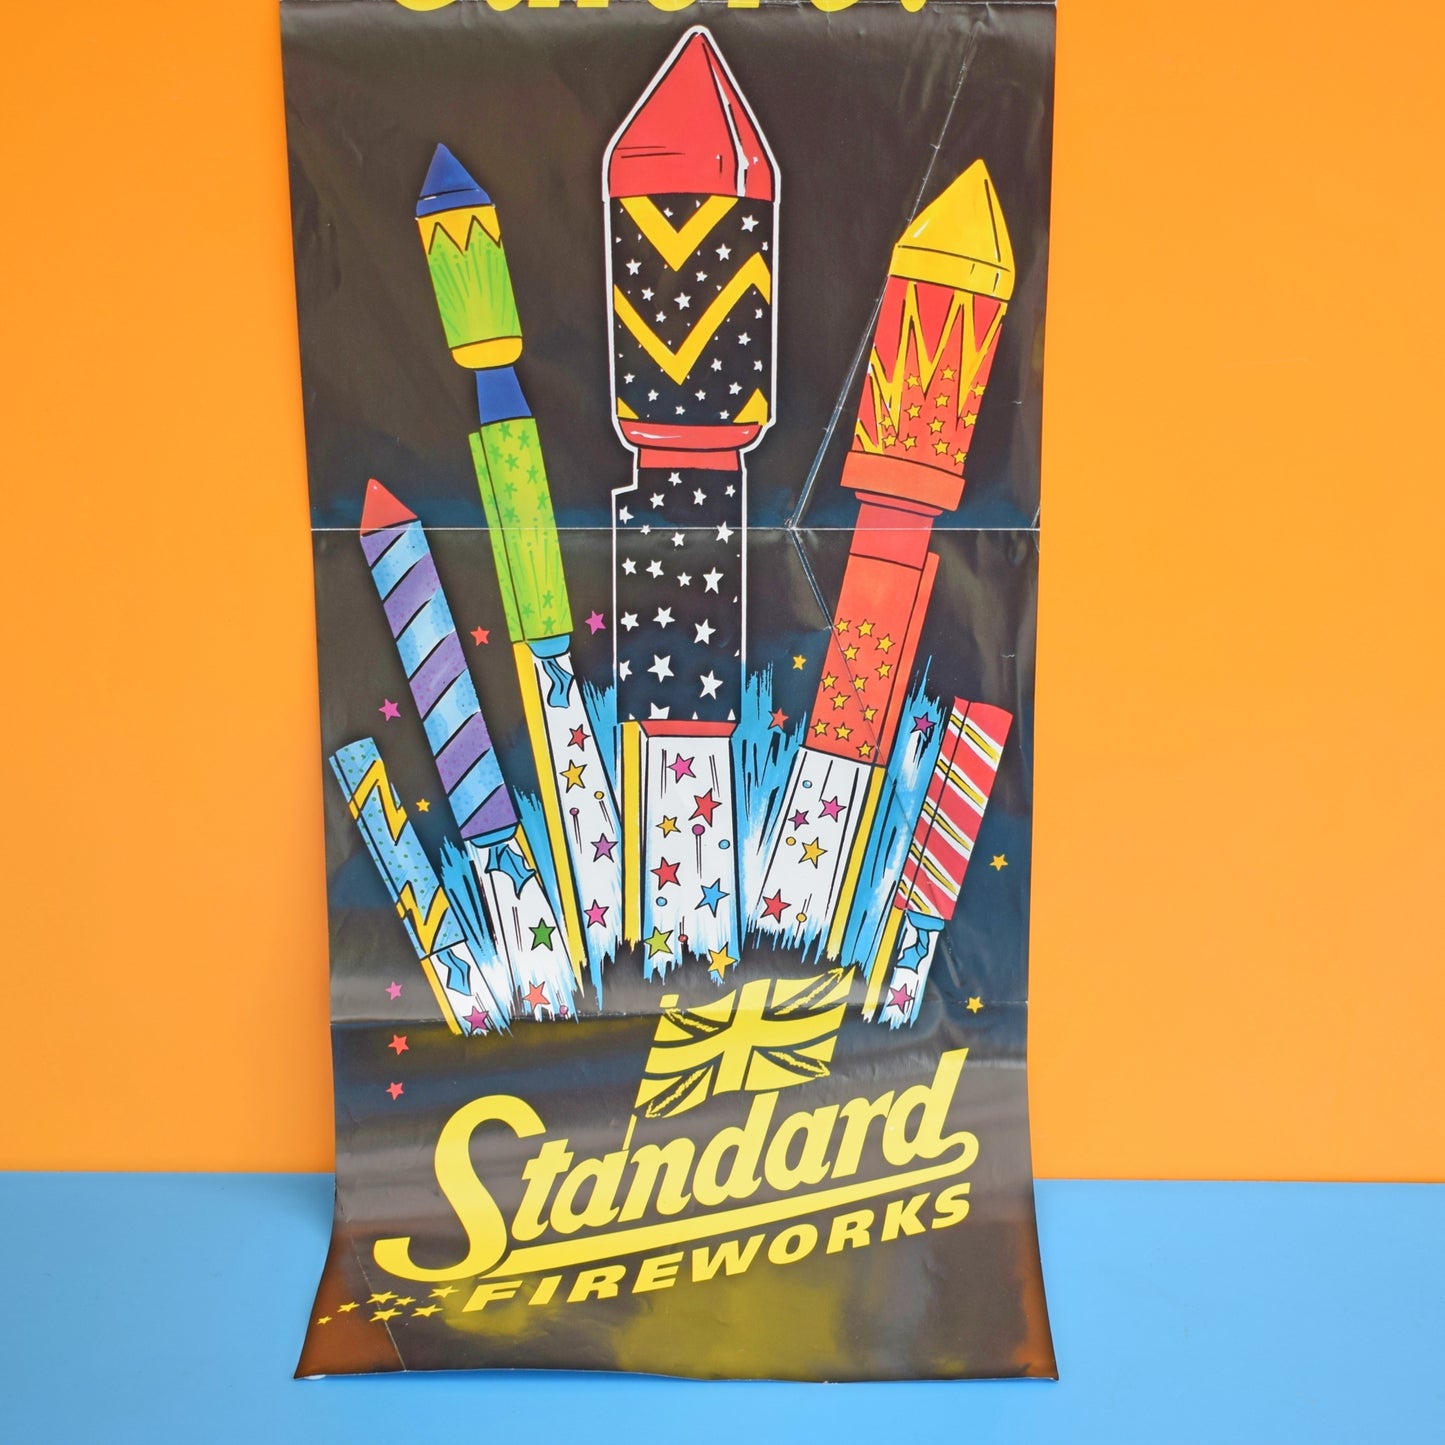 Vintage 1990s Fireworks Poster- Standard Fireworks